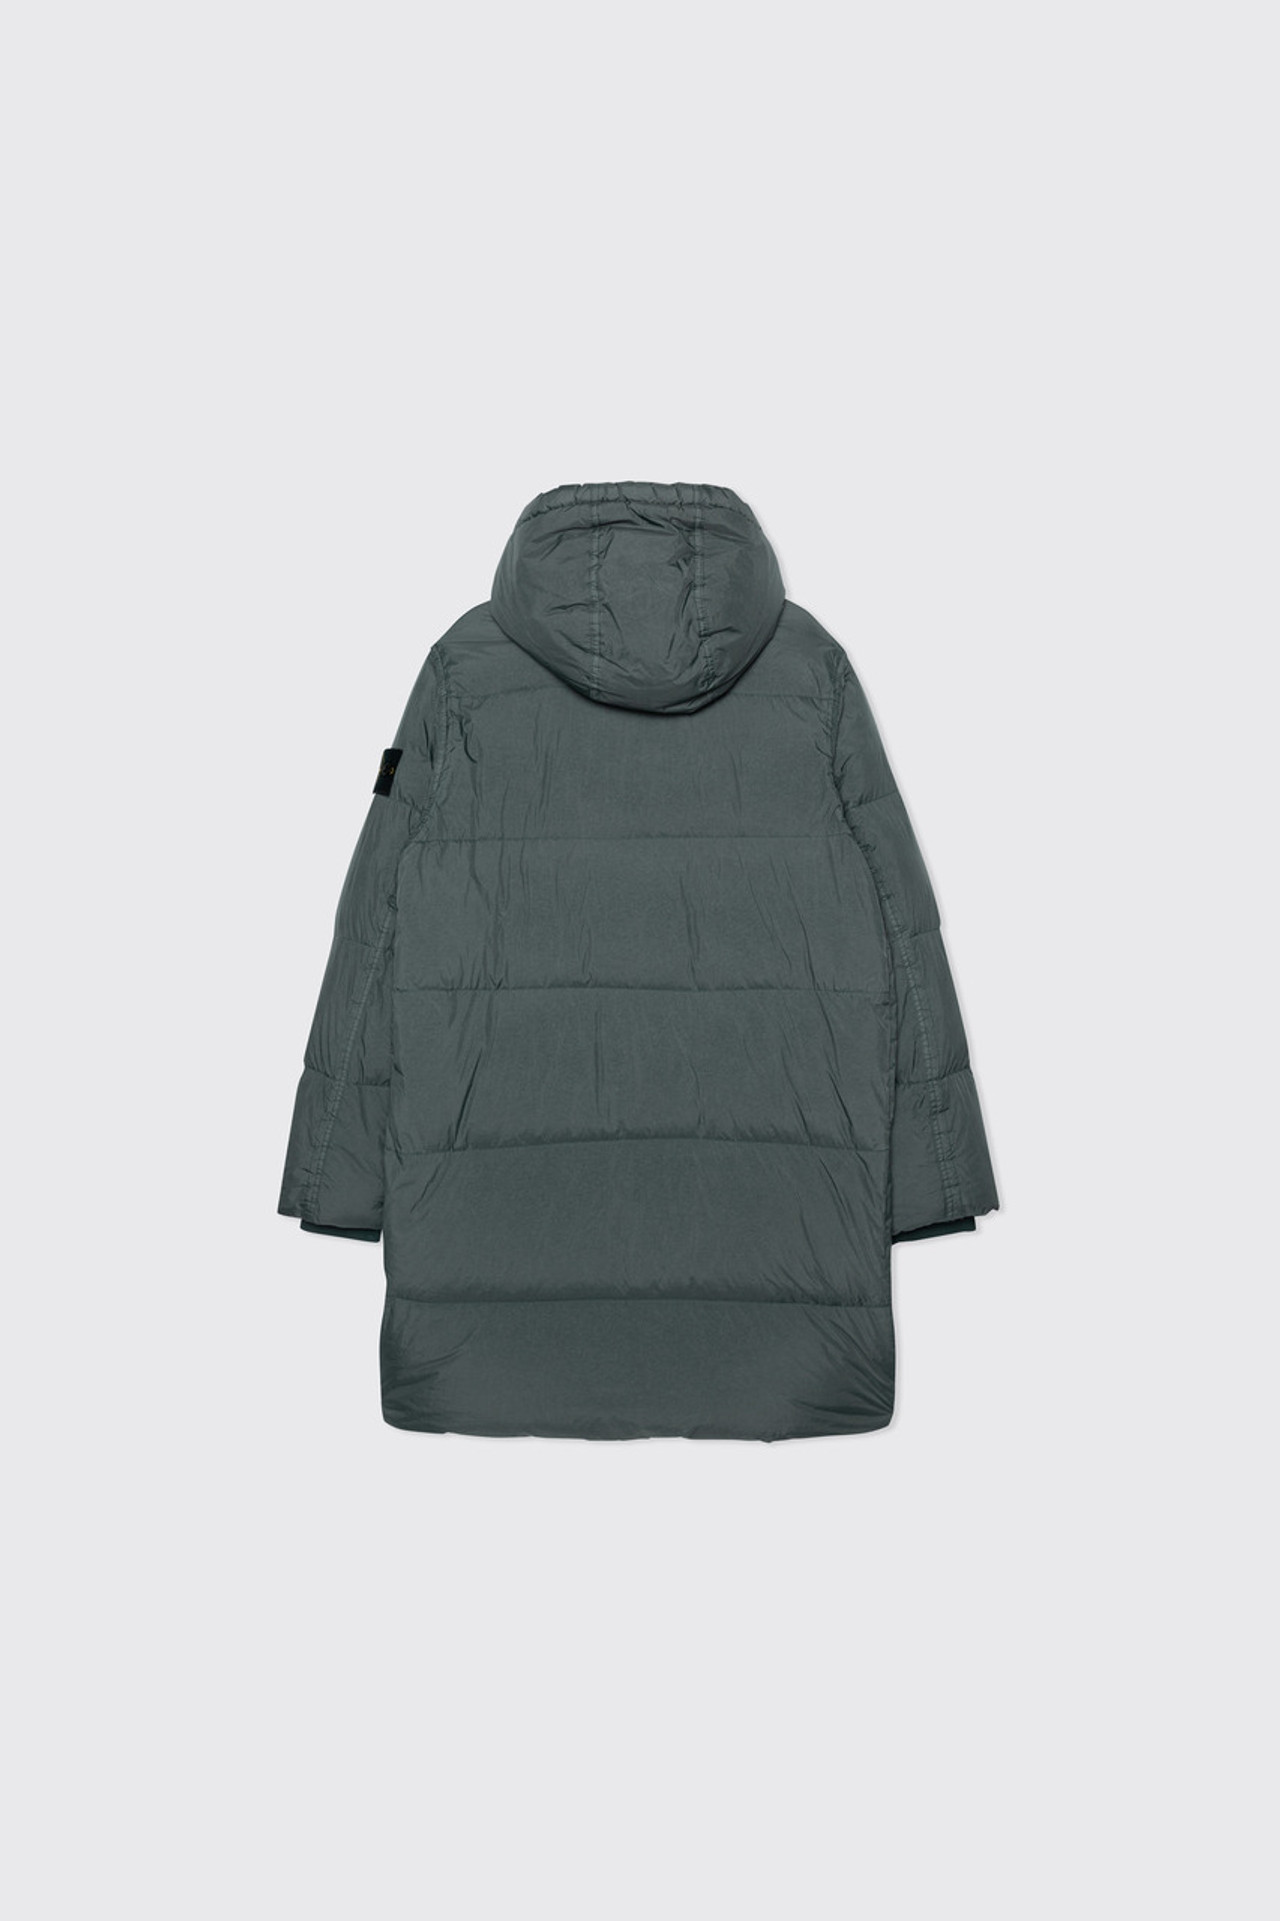 Stone Island – Fleece Jacket Lead Grey